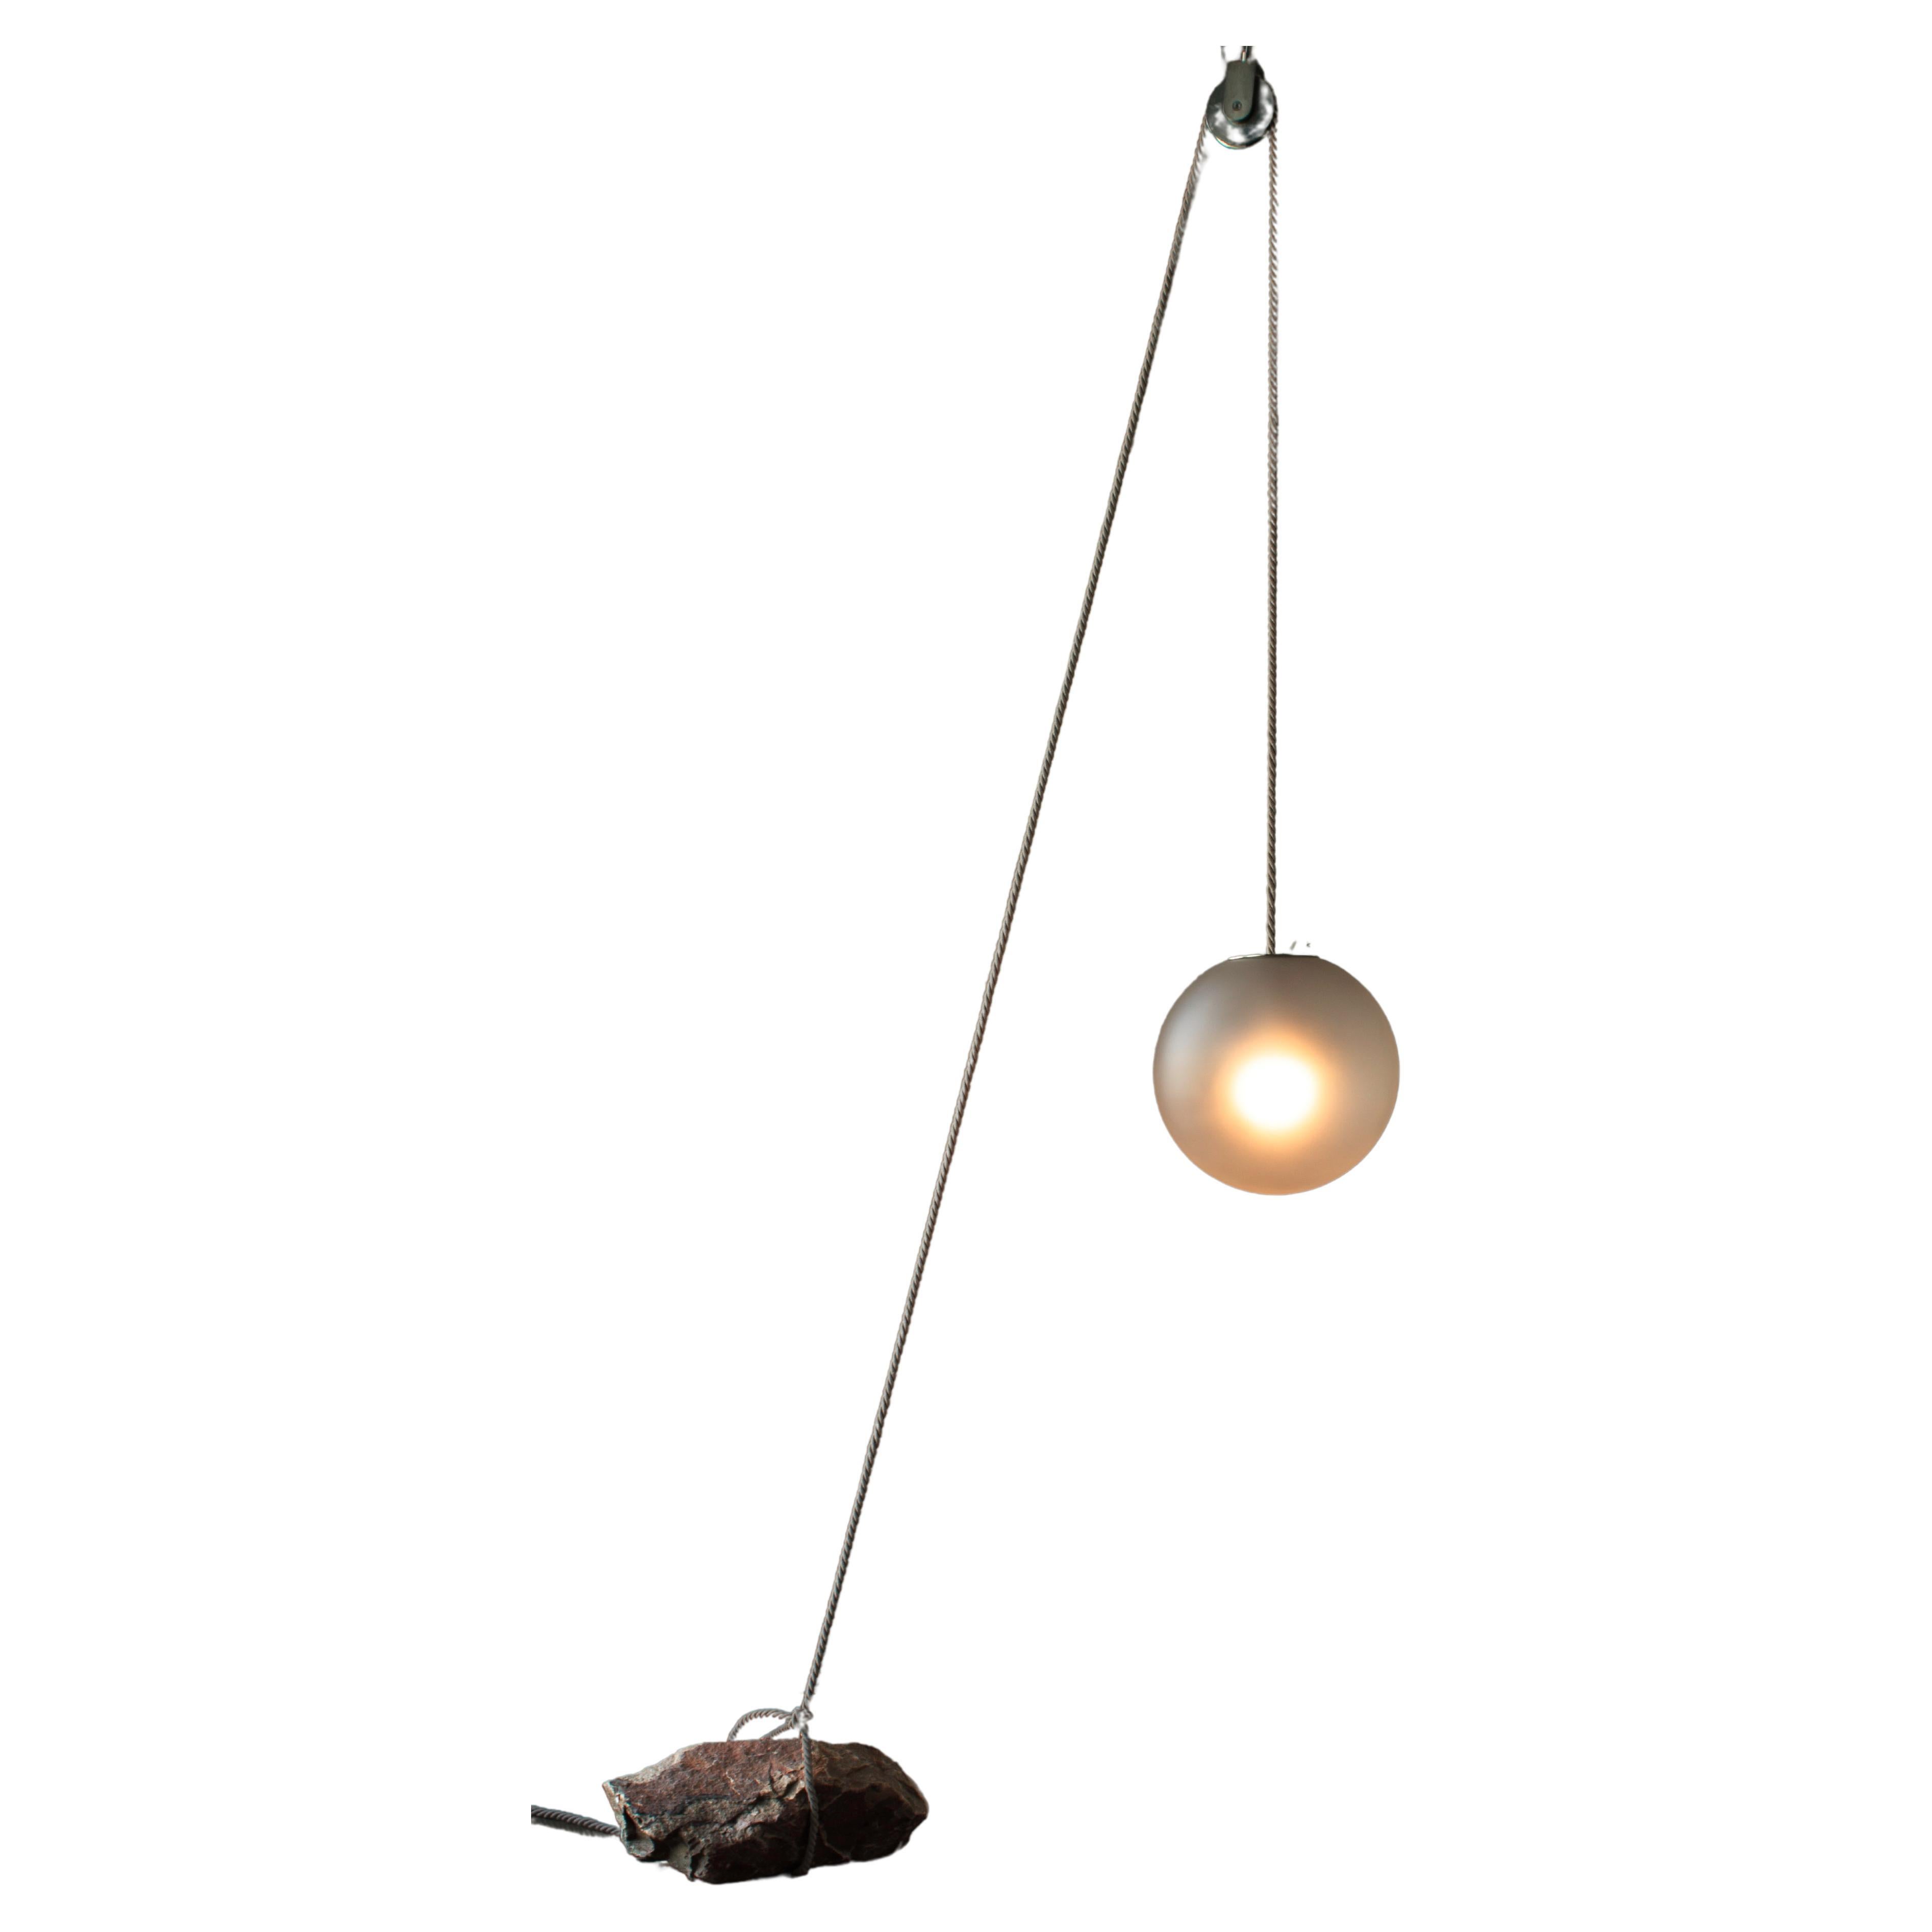 Dutch Beacon of Light D40 Glass Ball Sculptural Natural Stone Pendant Floor Lamp